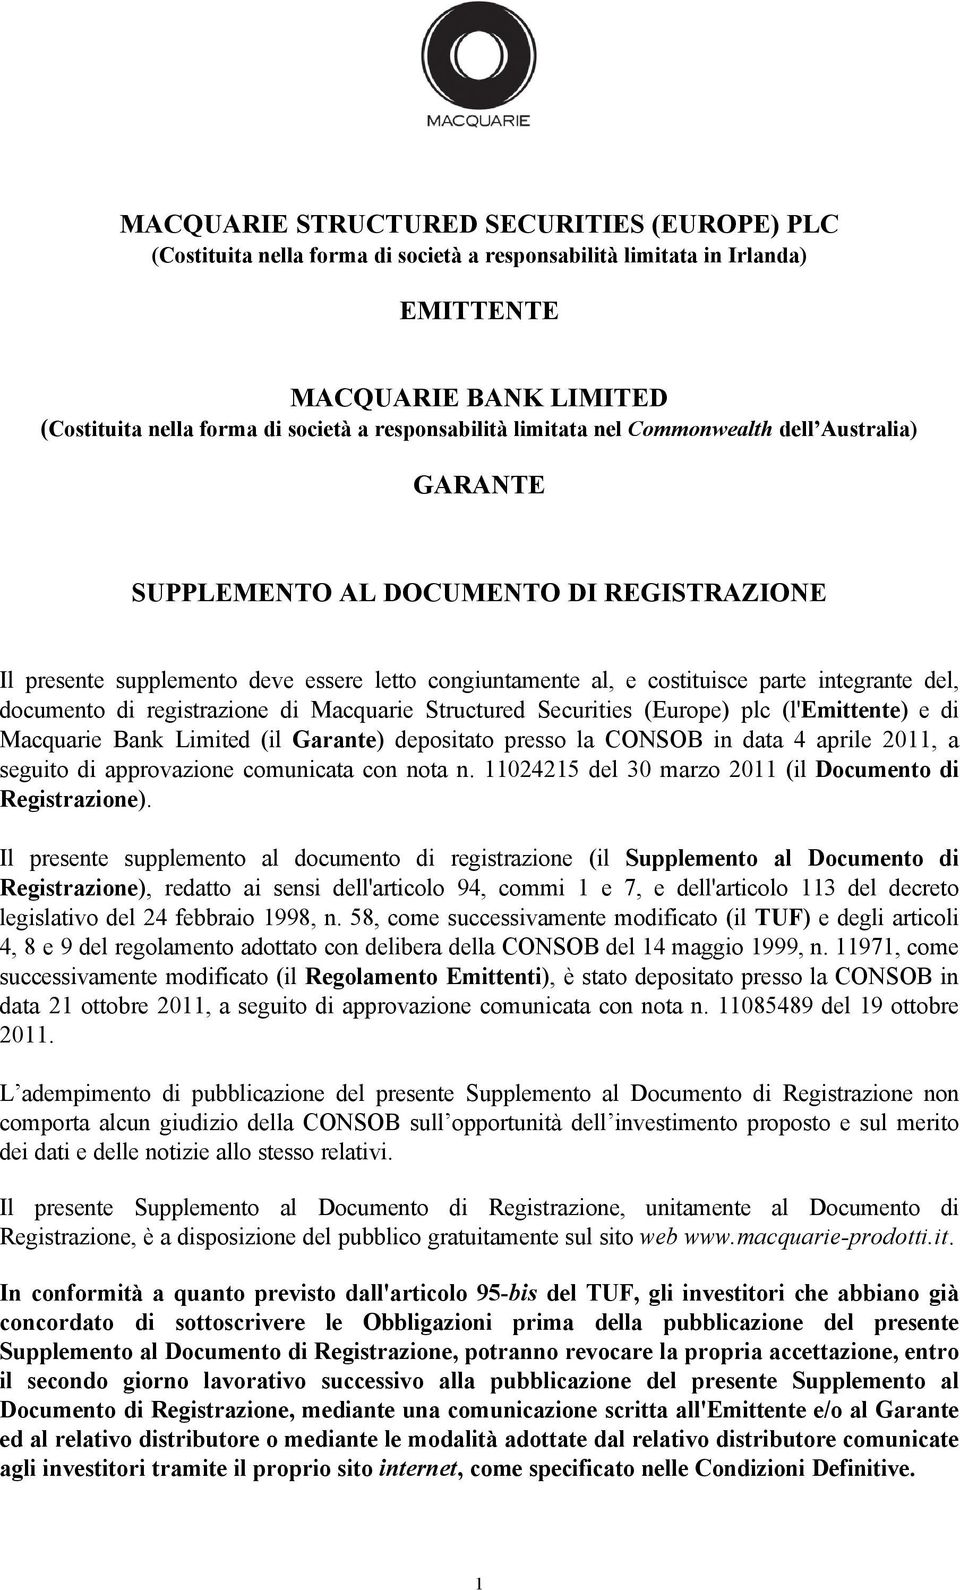 del, documento di registrazione di Macquarie Structured Securities (Europe) plc (l'emittente) e di Macquarie Bank Limited (il Garante) depositato presso la CONSOB in data 4 aprile 2011, a seguito di